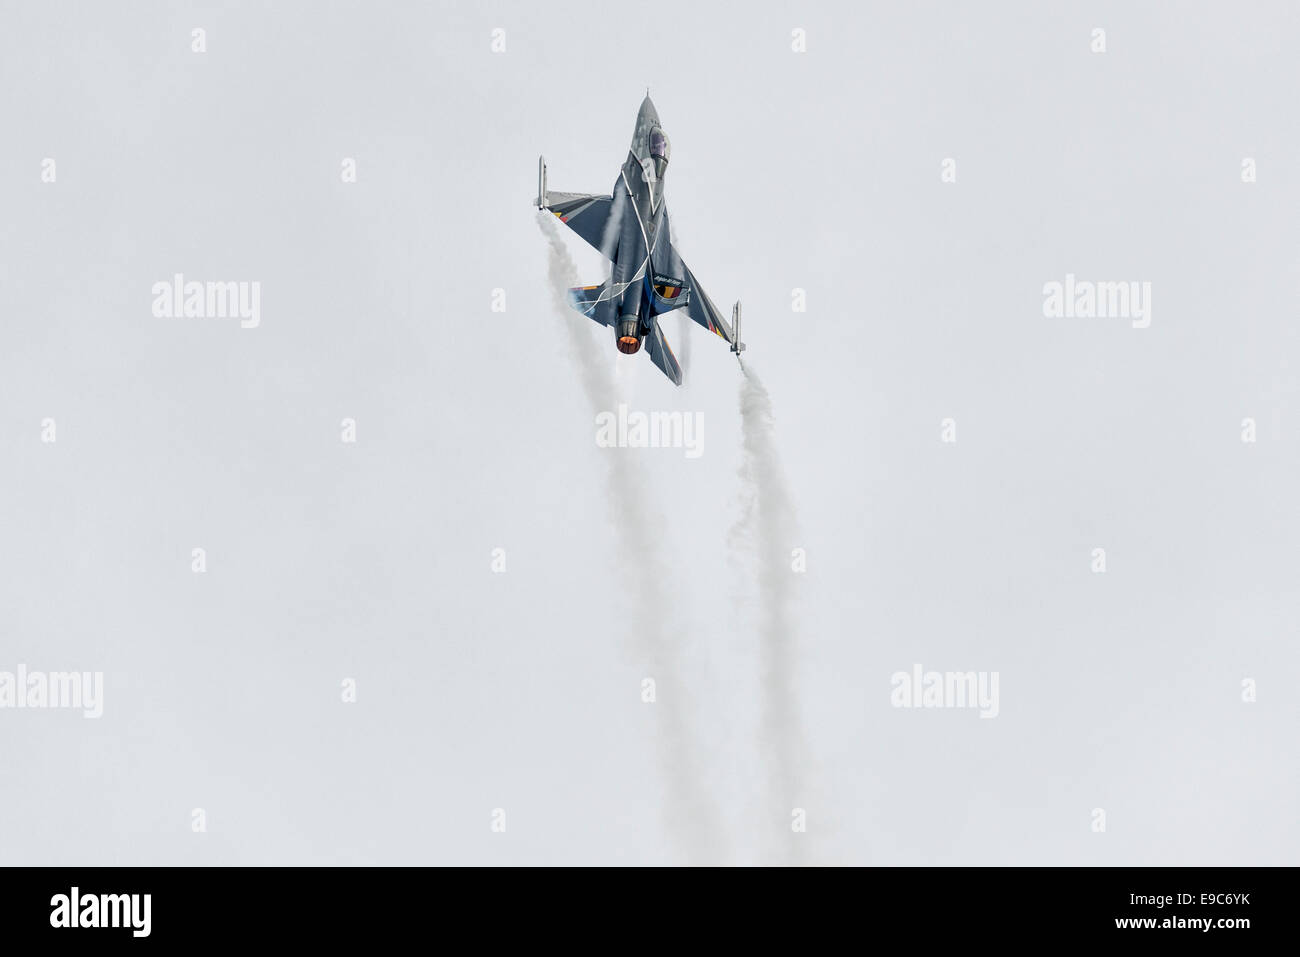 Un General Dynamics F-16A Fighting Falcon chasseur à réaction militaires de l'Escadron 350 de la Force Aérienne belge propose un affichage impressionnant. Banque D'Images